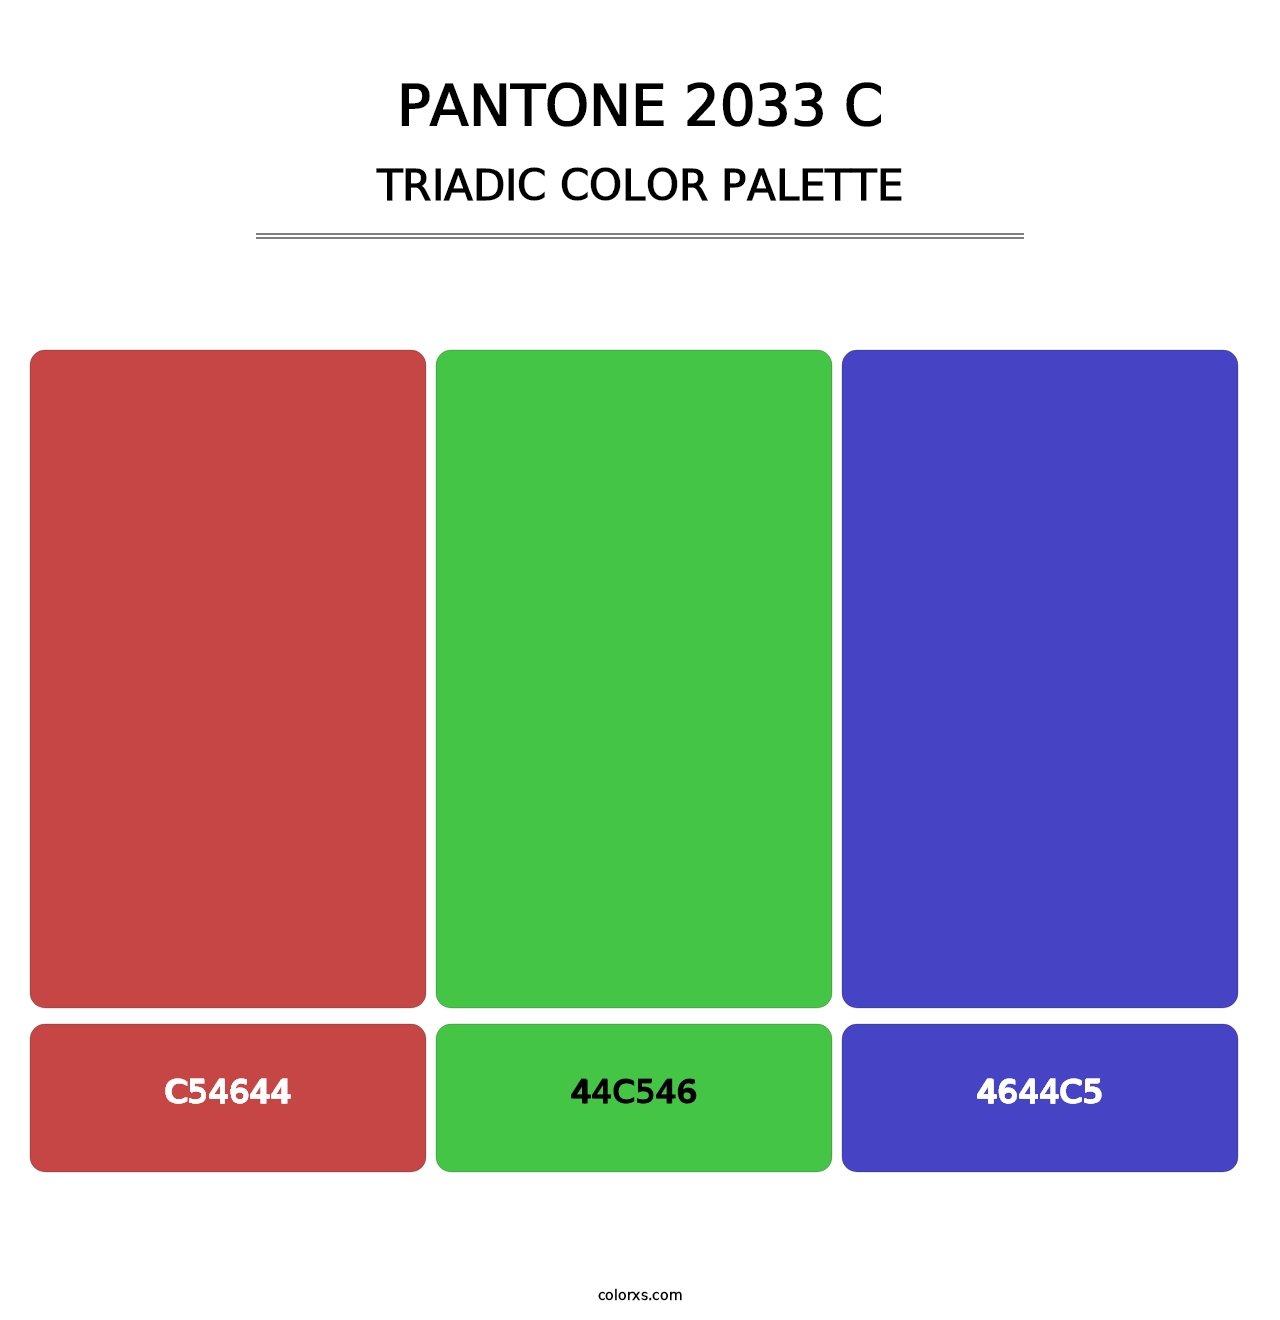 PANTONE 2033 C - Triadic Color Palette